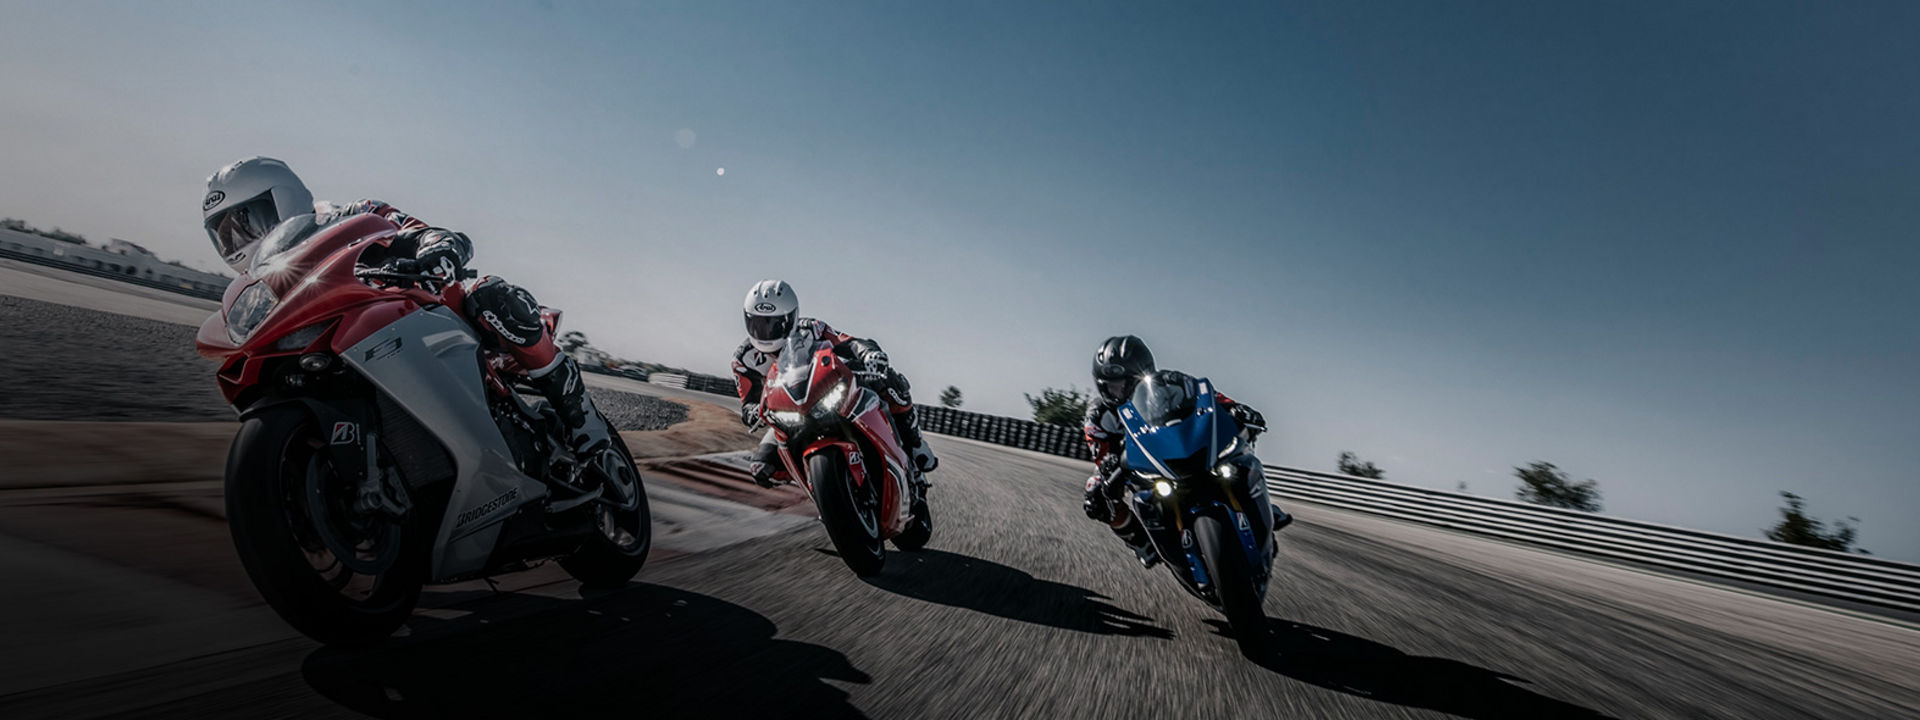 Esta imagen muestra a tres motociclistas tomando una curva con neumáticos Bridgestone en una pista de carreras a alta velocidad.